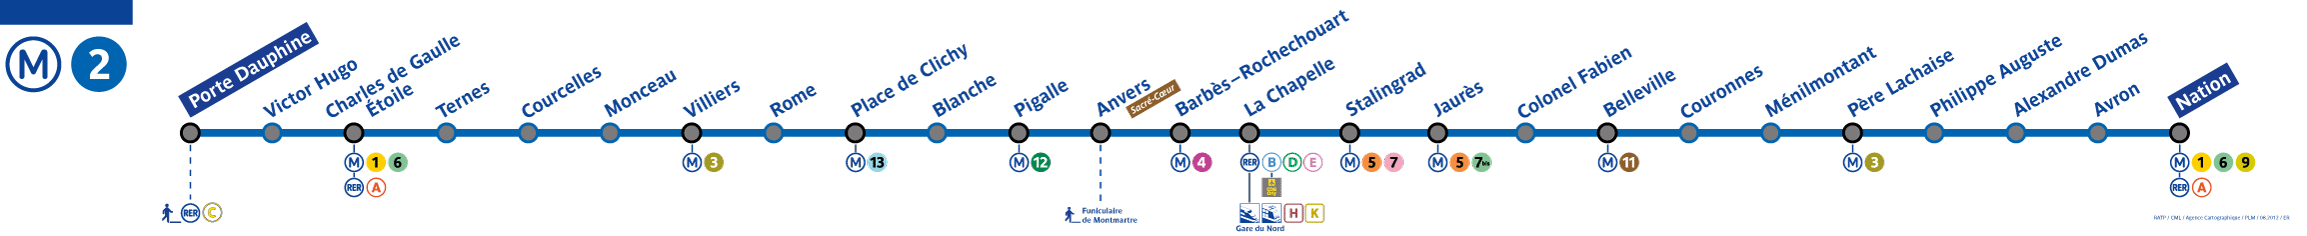 Paris metro line 2 map - Paris Metro Map